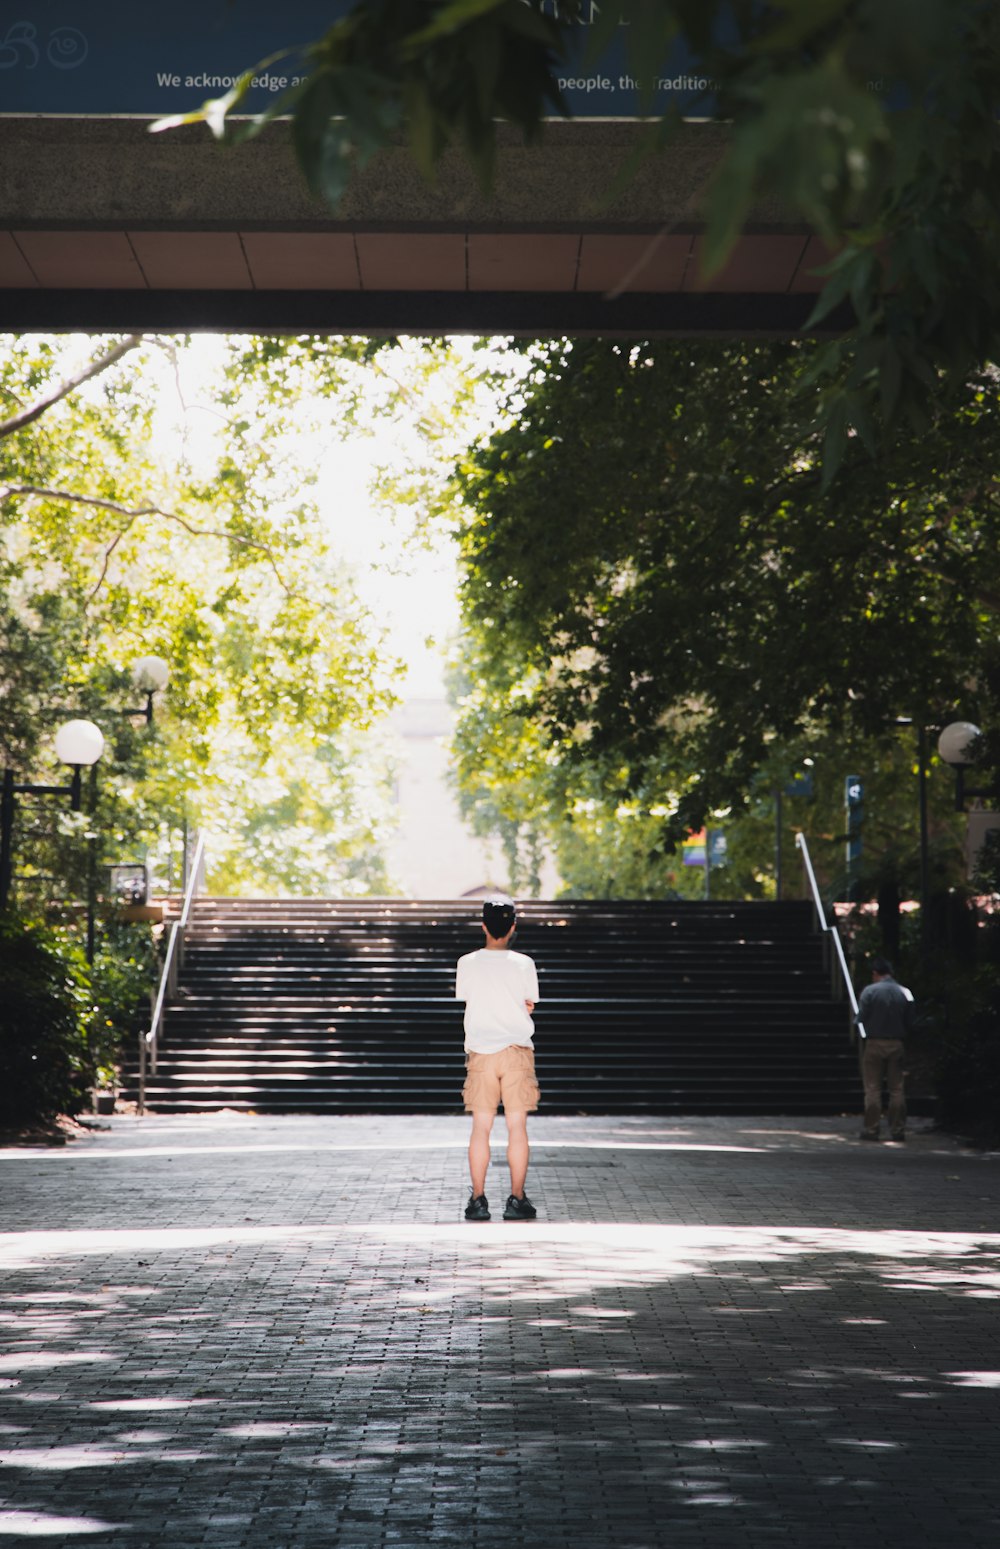 흰색 티셔츠와 갈색 반바지를 입은 남자가 낮 동안 보도를 걷고 있다